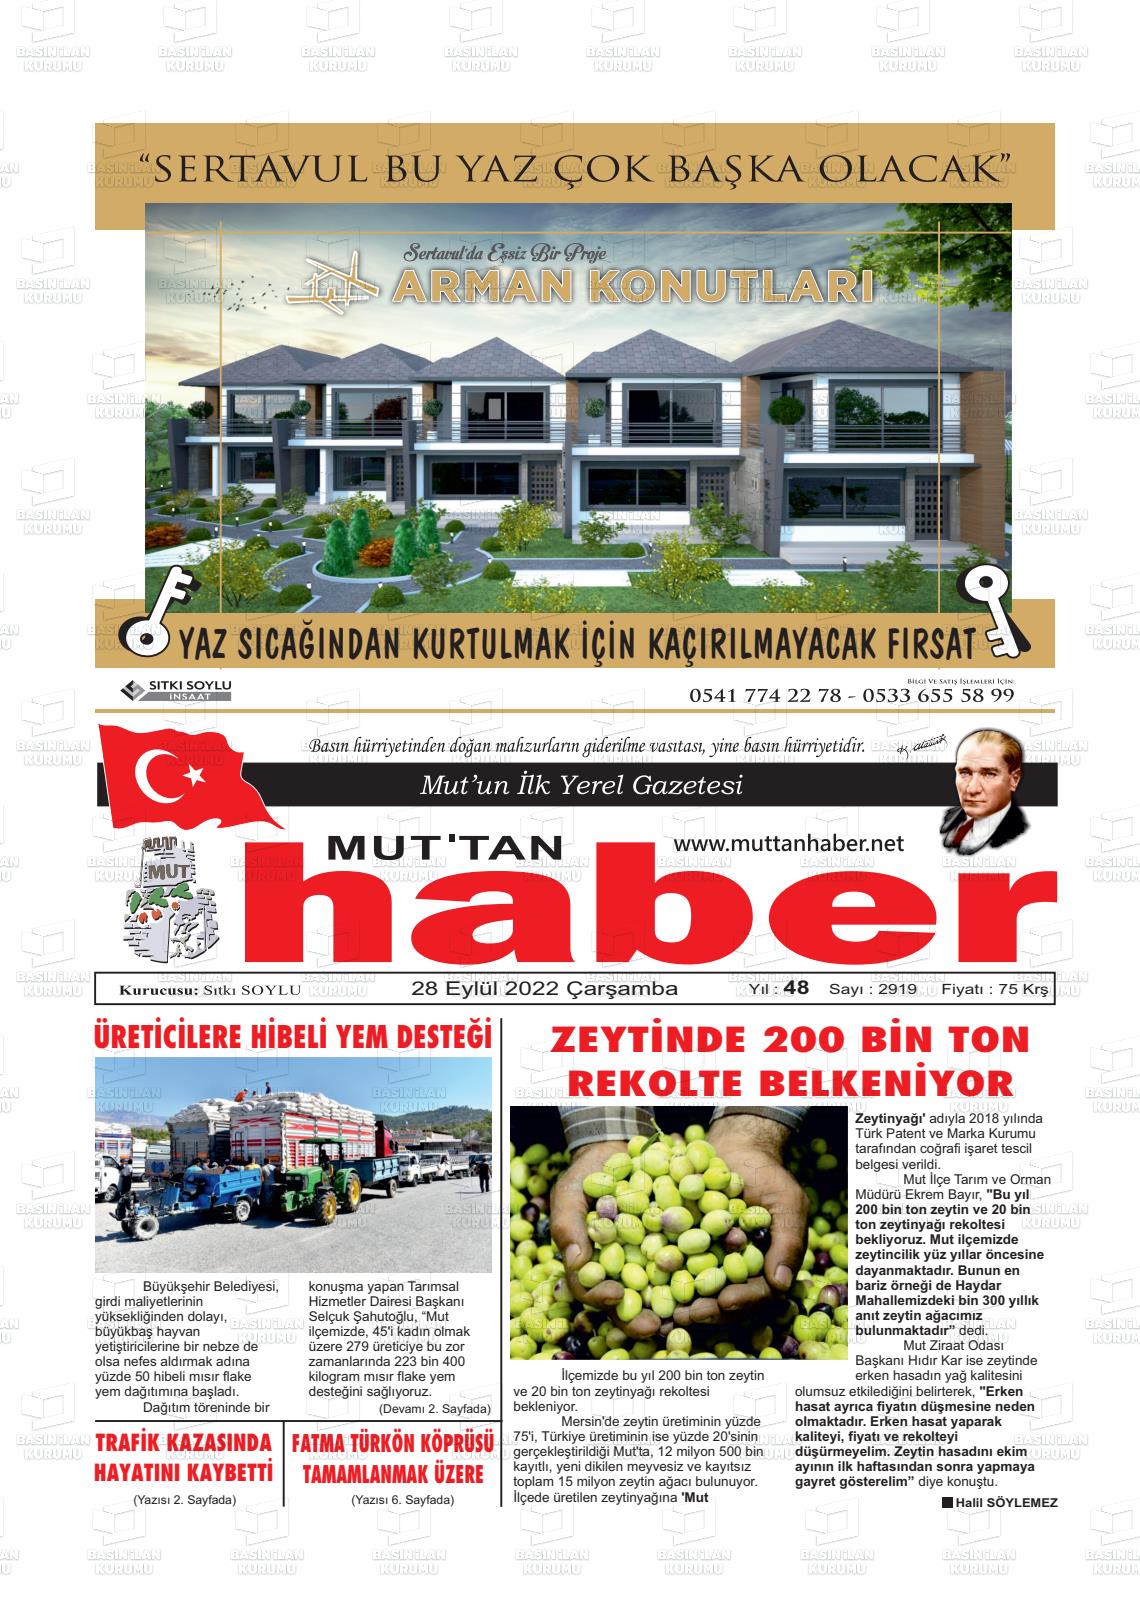 28 Eylül 2022 Mut'tan Haber Gazete Manşeti